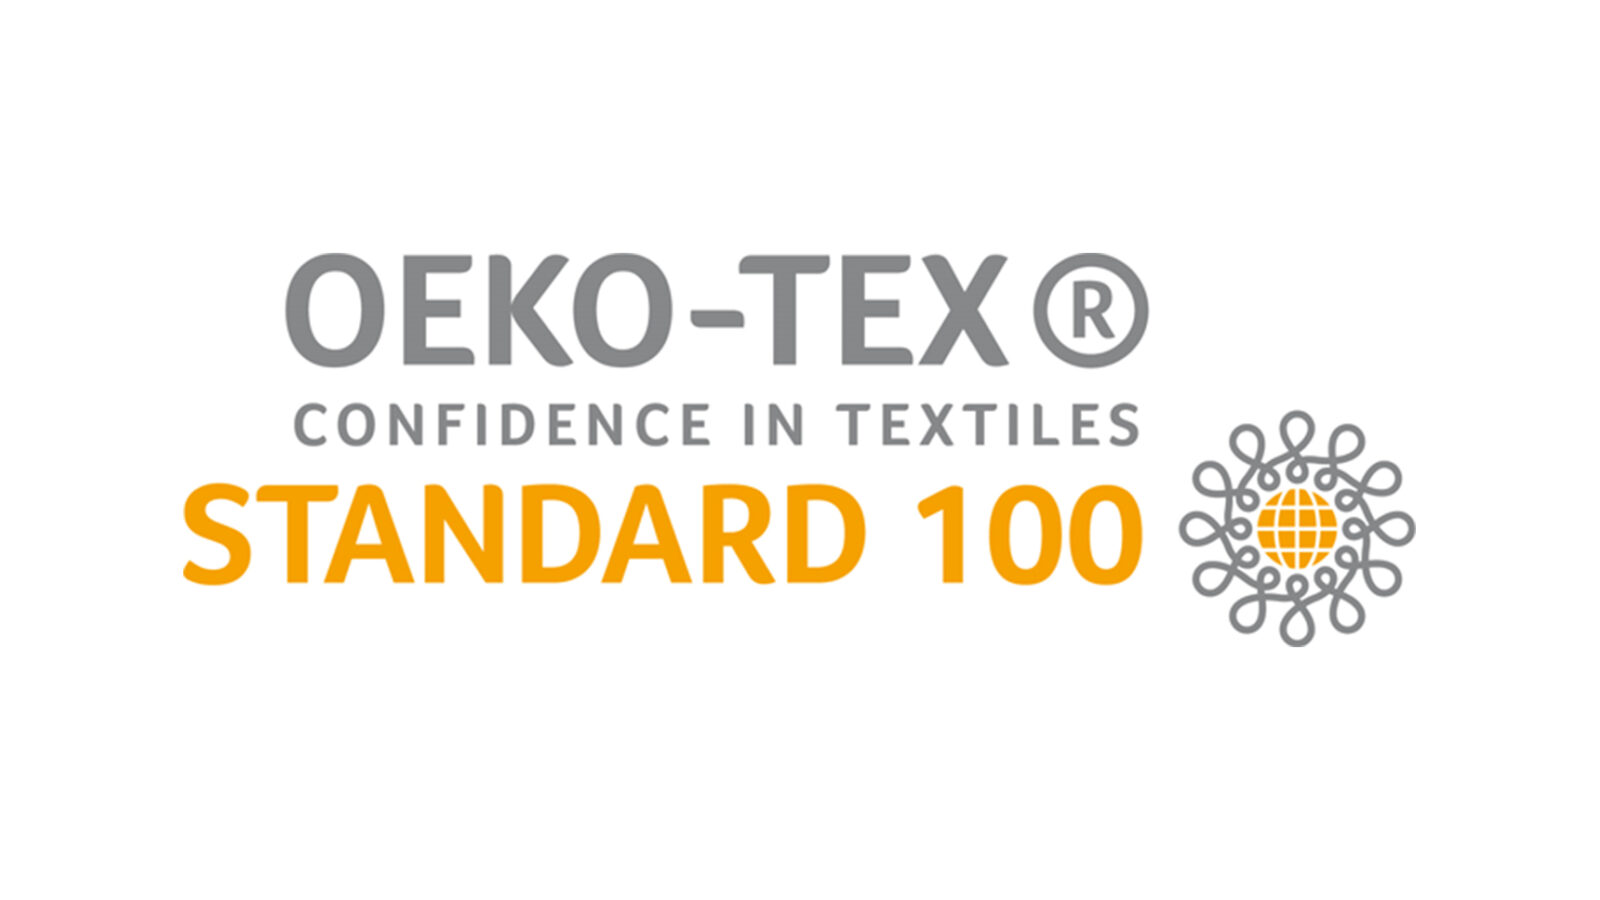 Oeko-Tex 100